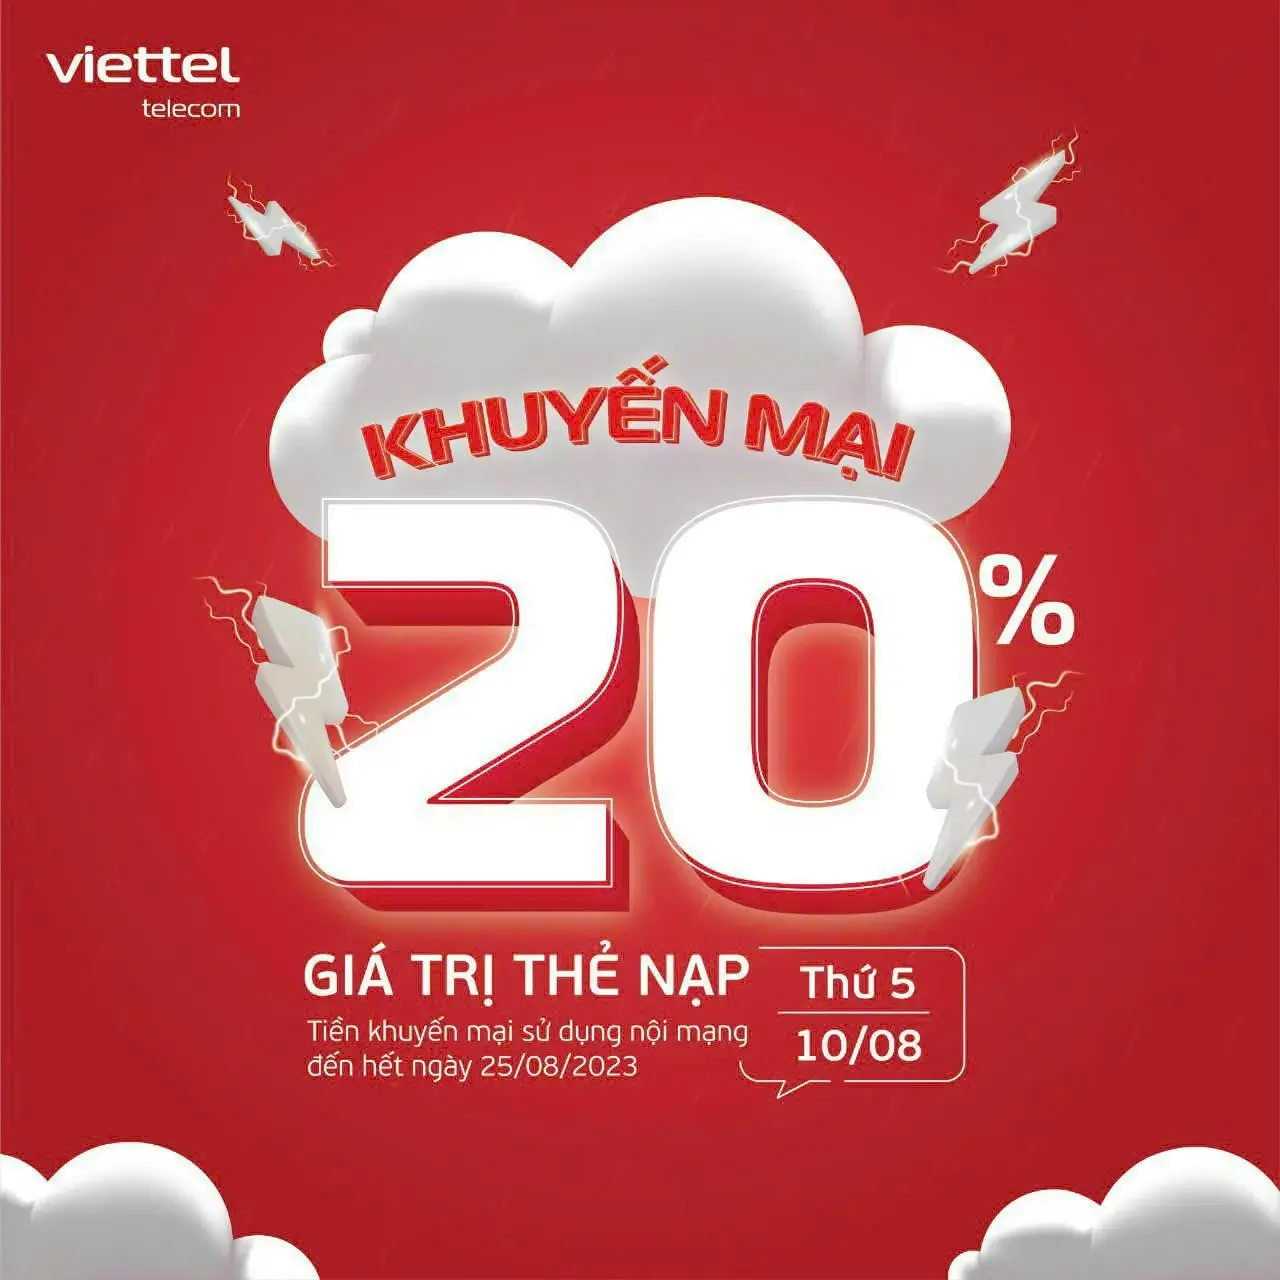 Ngày 10/08/2023, Viettel khuyến mại 20% tất cả các mệnh giá thẻ nạp